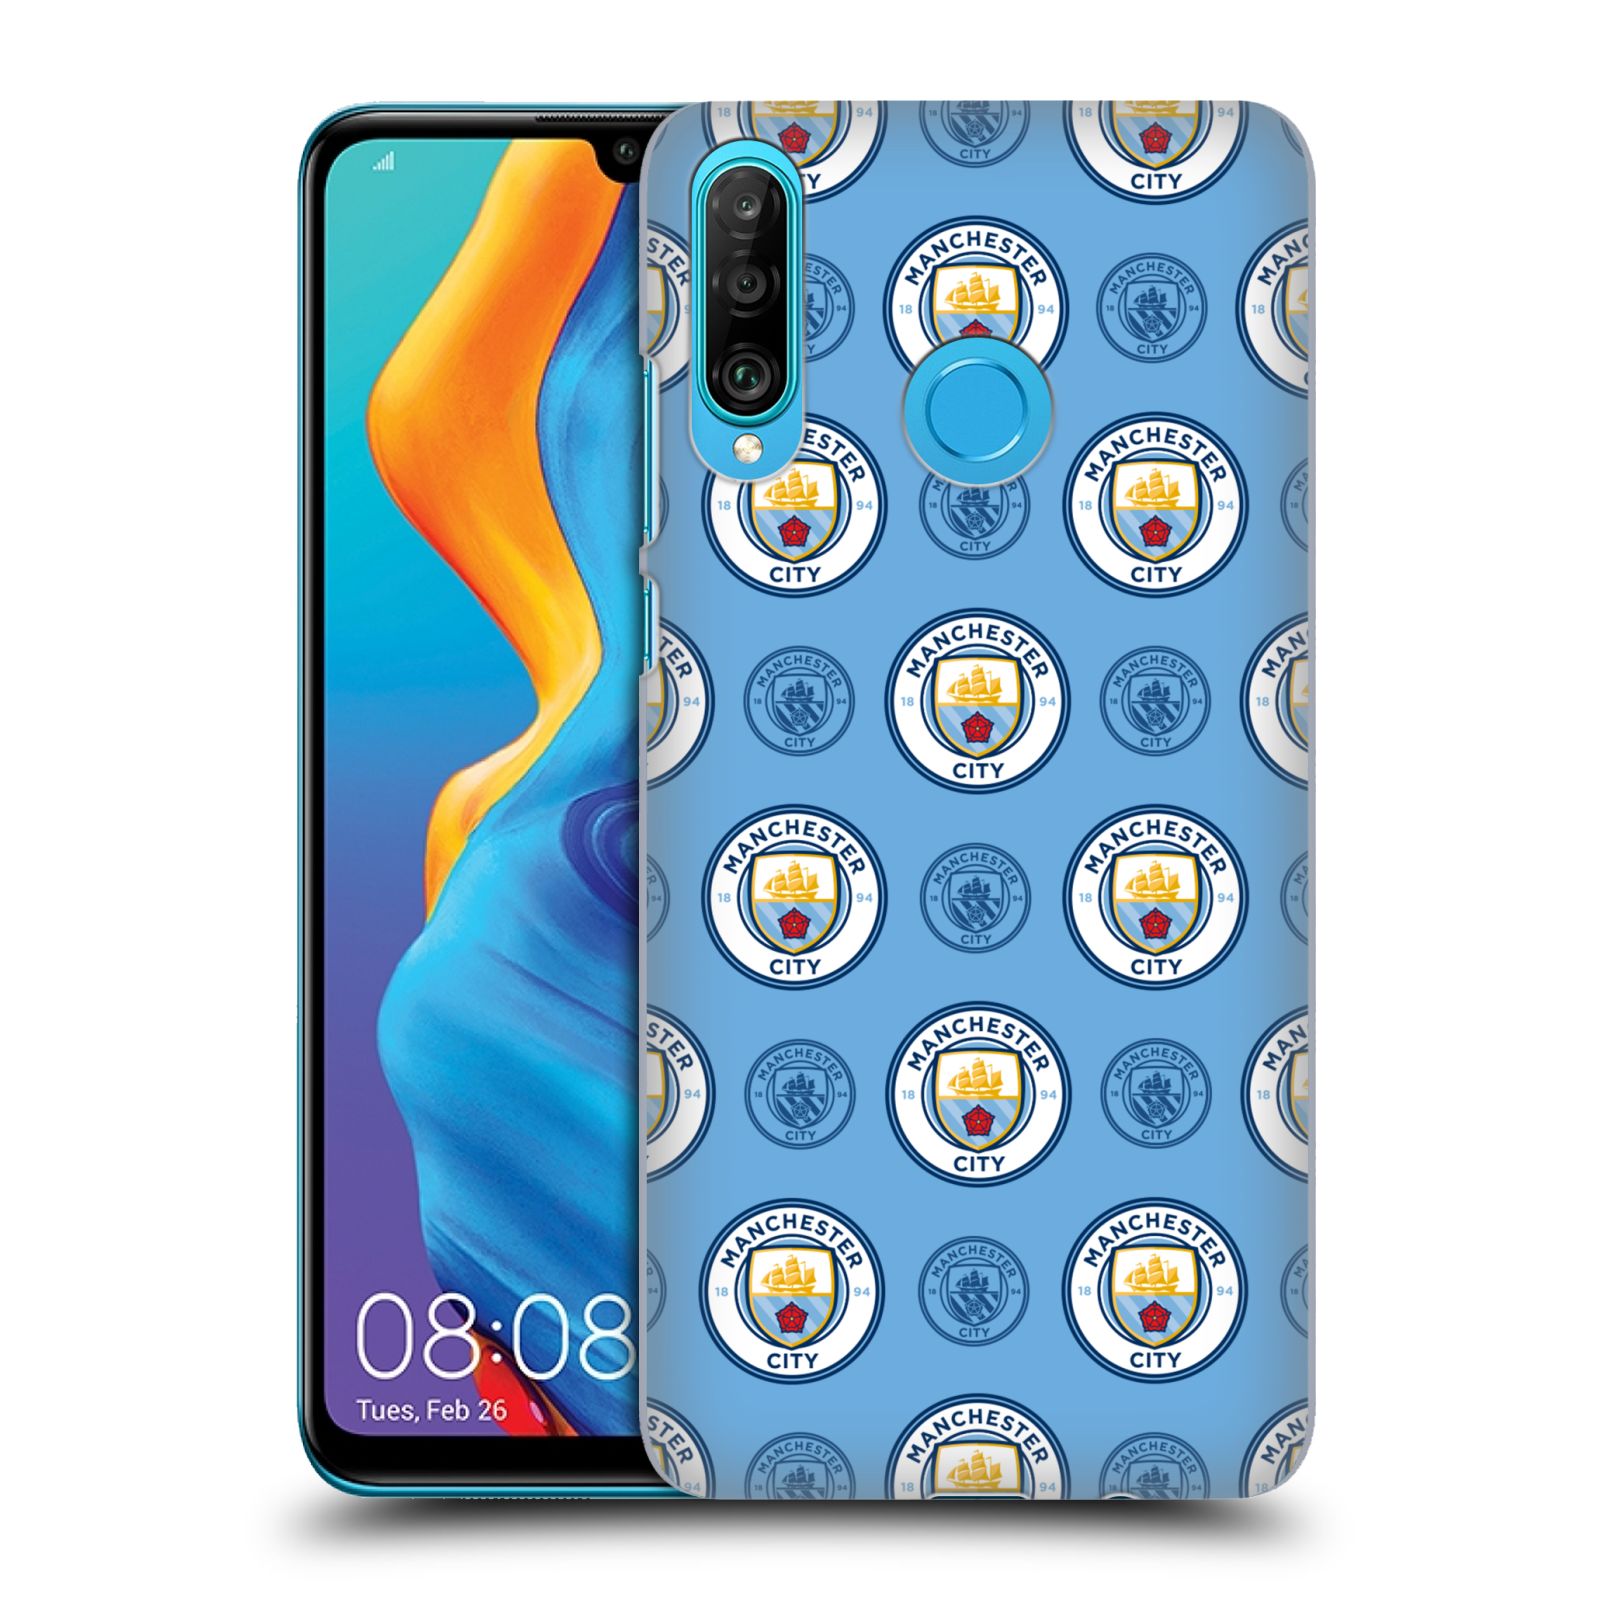 Pouzdro na mobil Huawei P30 LITE - HEAD CASE - Fotbalový klub Manchester City modrý vzorkovaný malé znaky